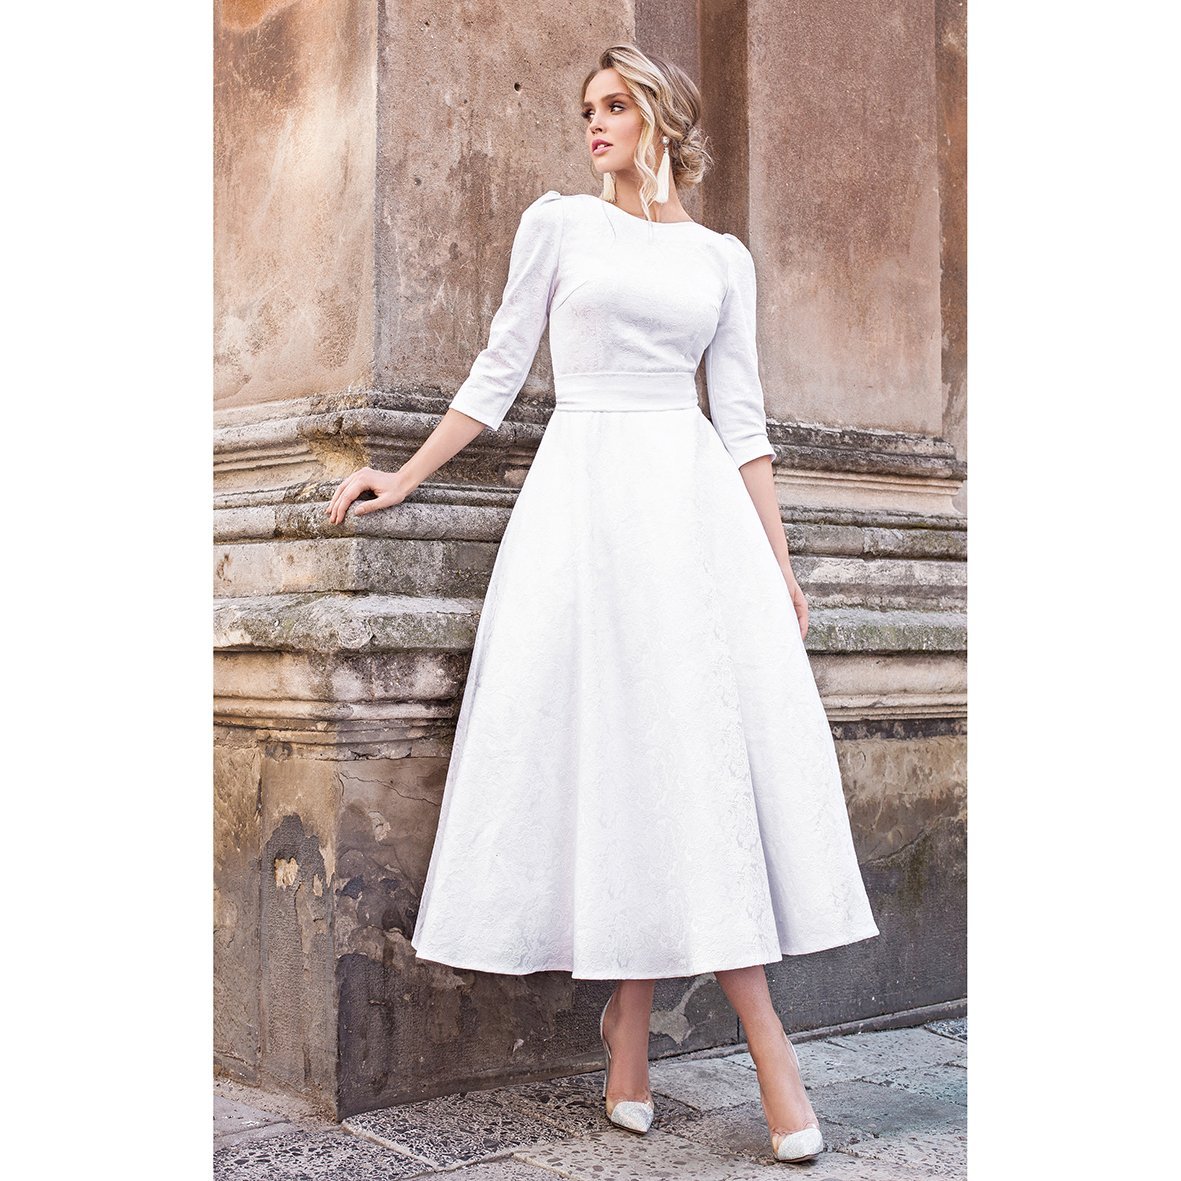 Jacquard dress "Alyzee" White - The Clothing Lounge Matsour'i